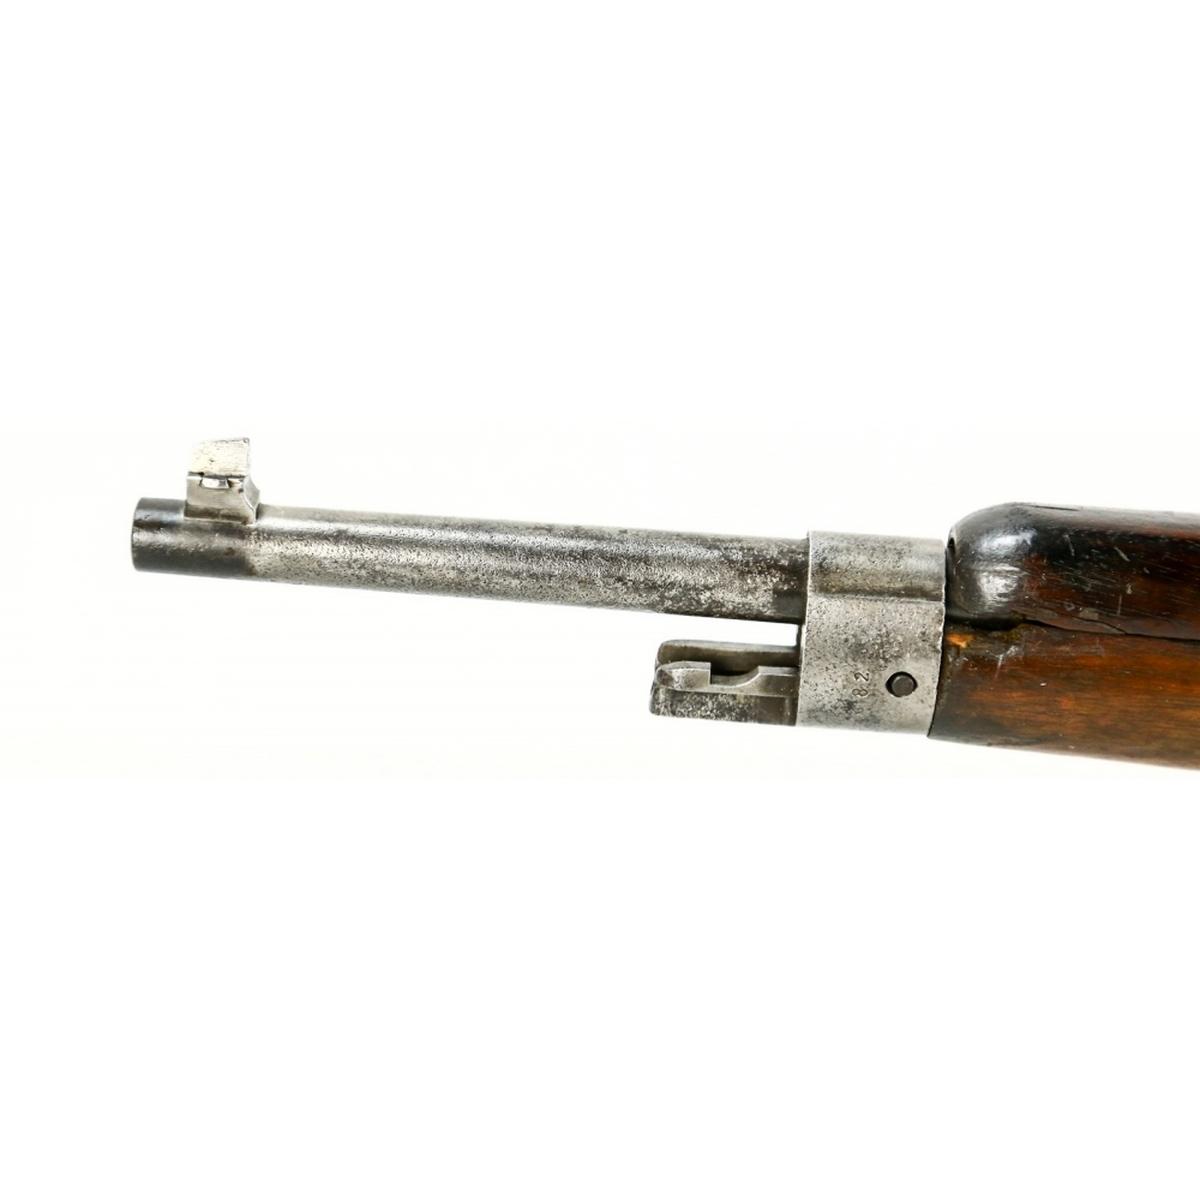 Dutch No. 2 M1895 Carbine 6.5 x 53.5R